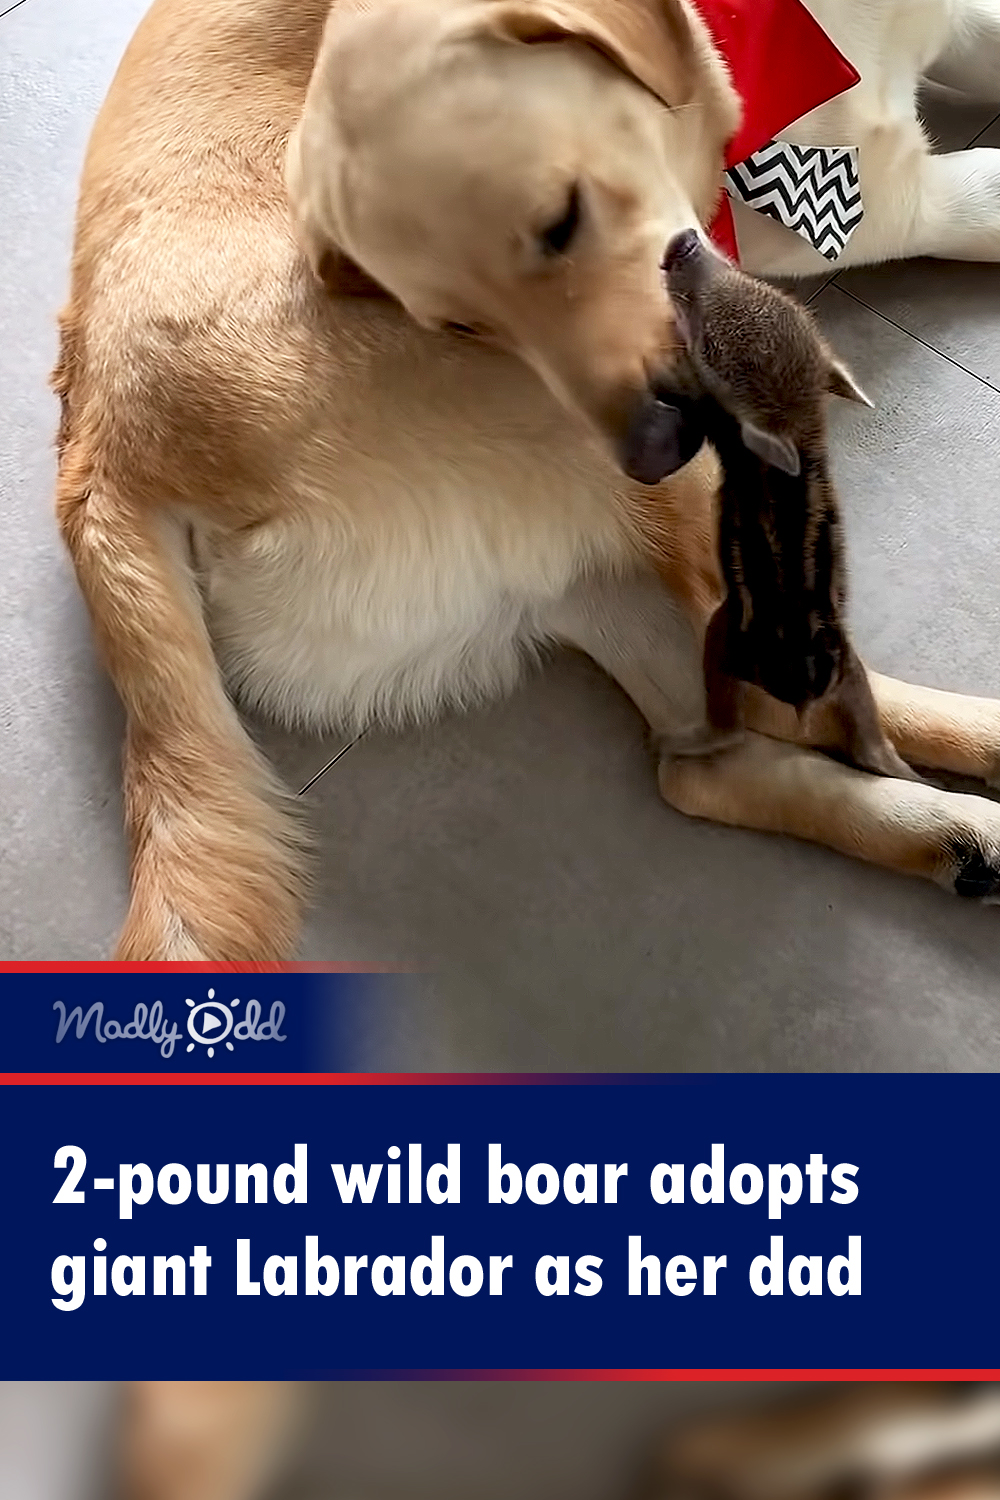 2-pound wild sow adopts giant Labrador as her dad